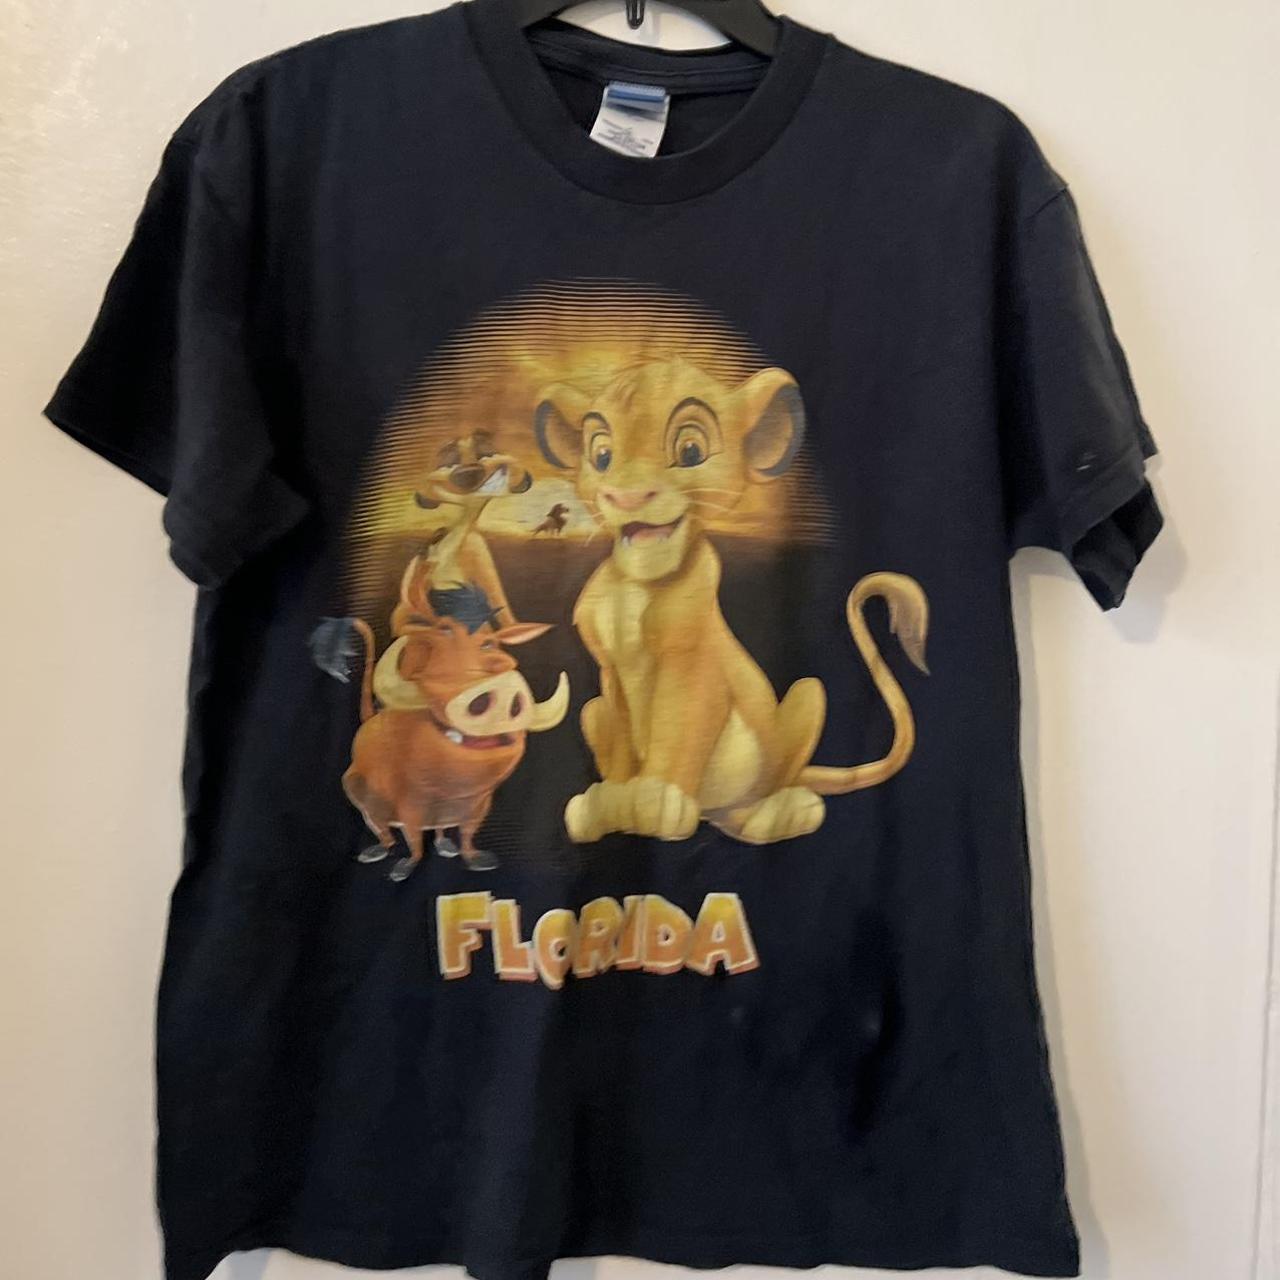 Vintage Disney Lion King Florida shirt from 90’s - Depop